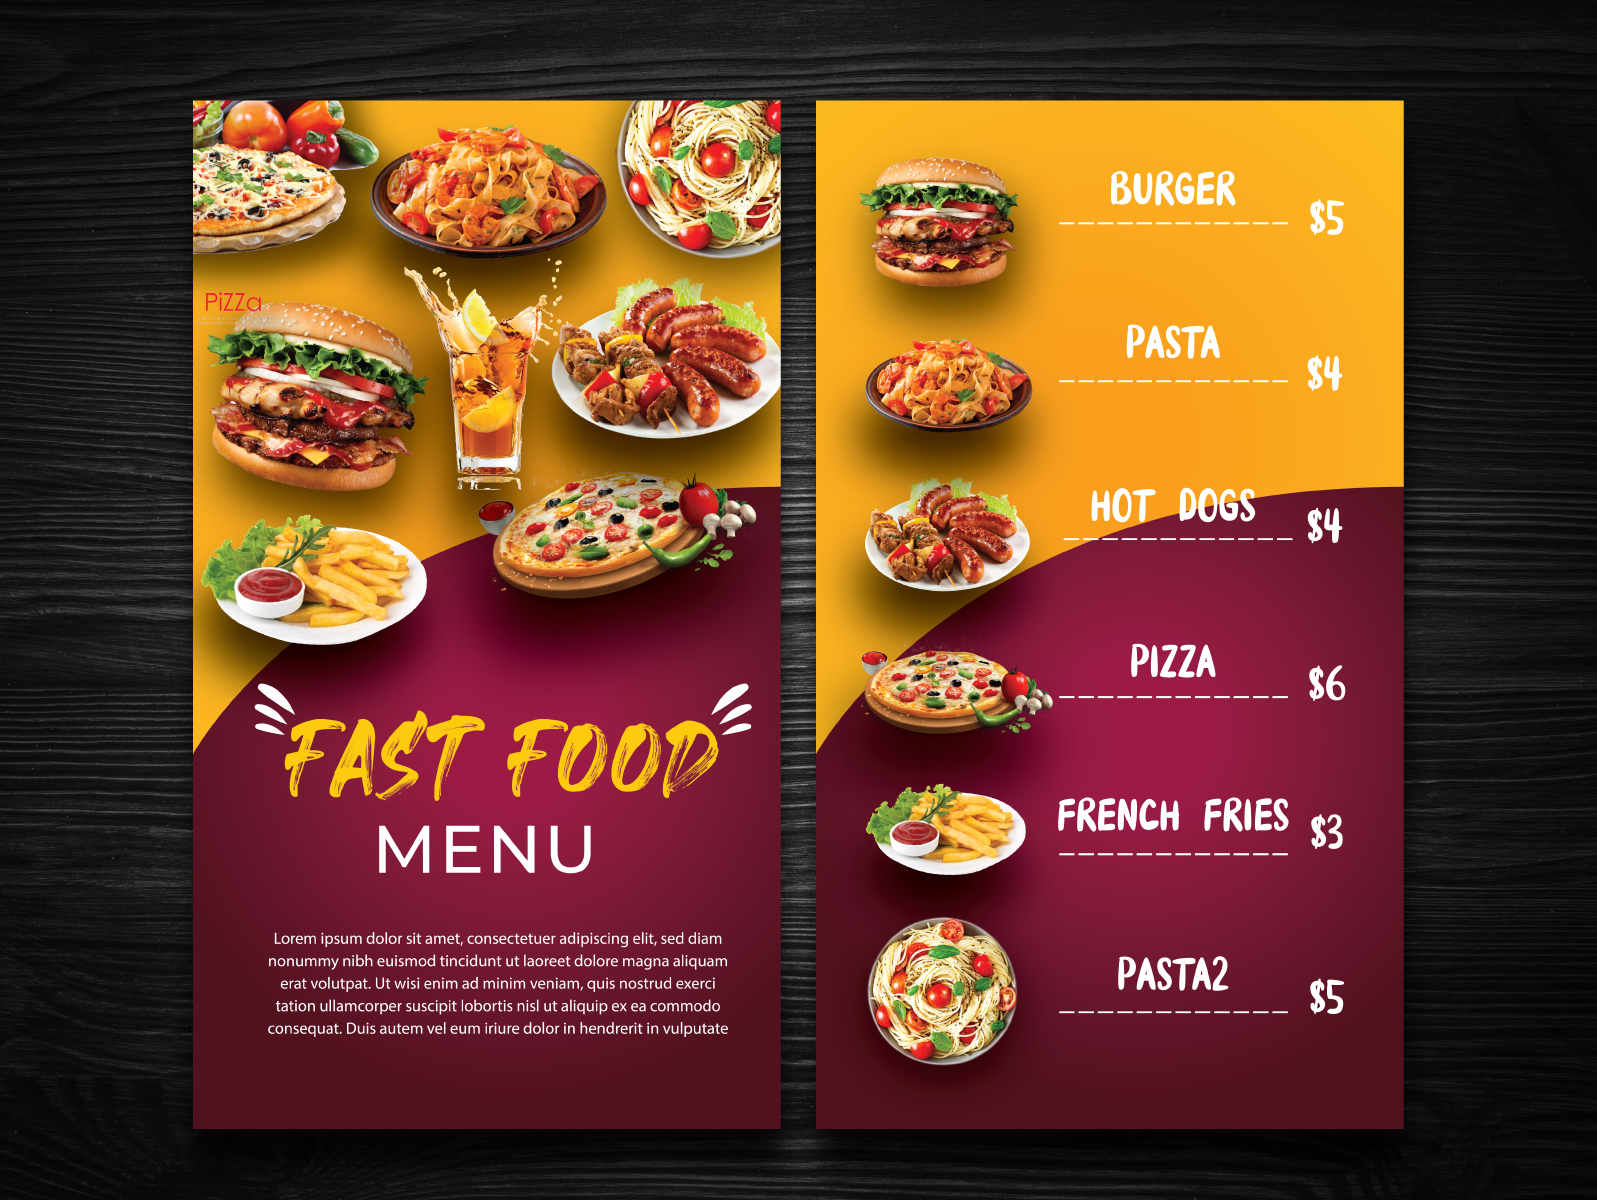 Севен меню. Food menu. Баннер меню для кафе. Fast food menu Design. Menu Design Size.